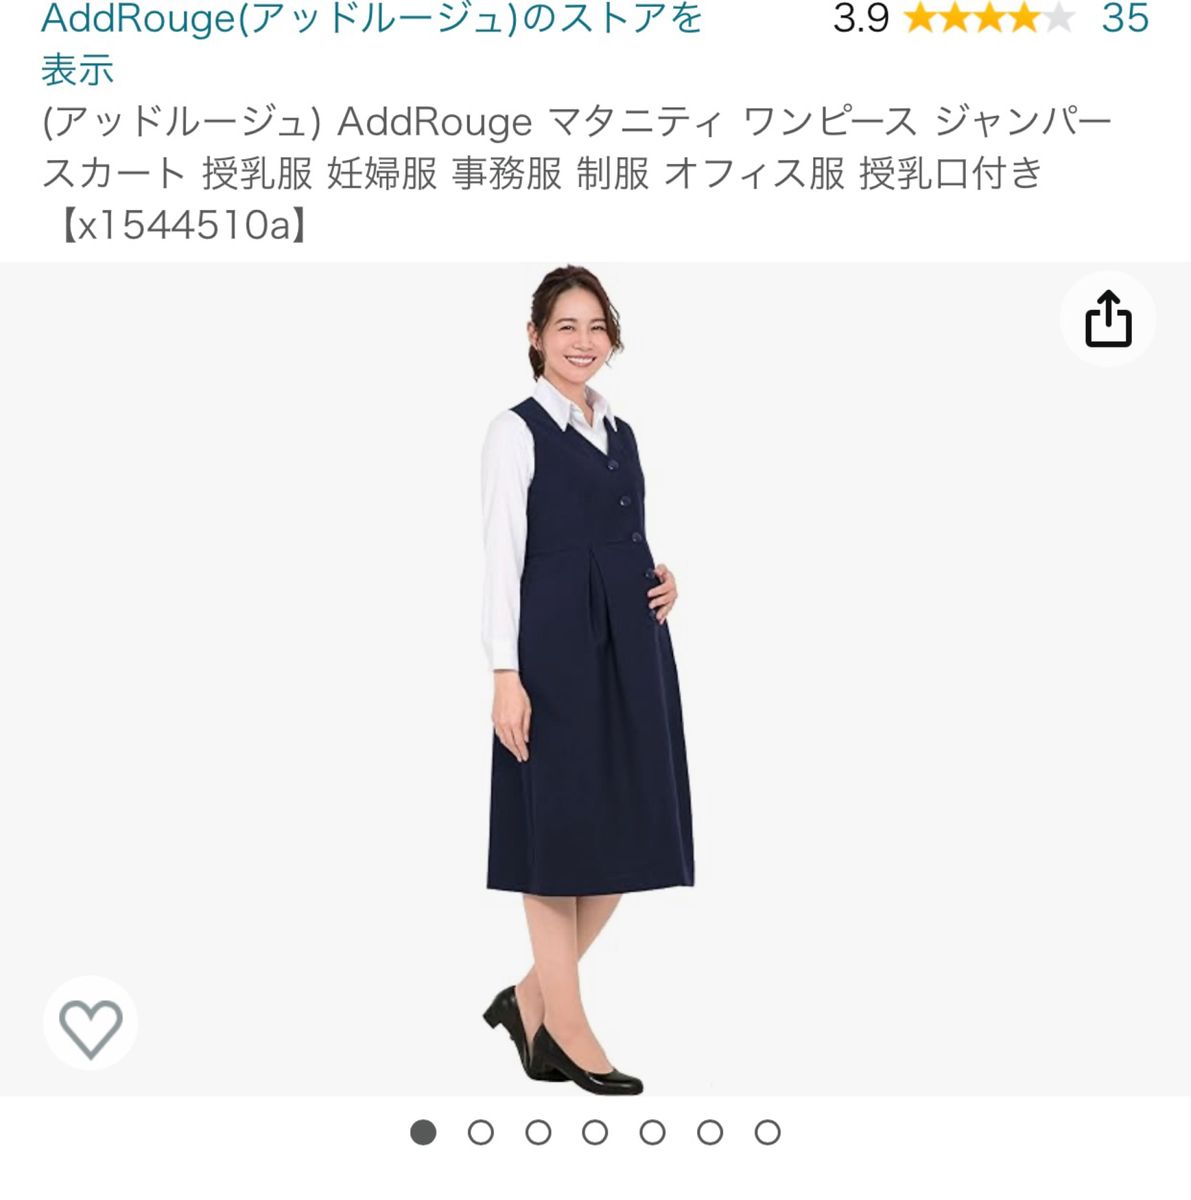 【未使用】AddRouge マタニティ ワンピース ジャンパースカート 授乳服 妊婦服 事務服 制服 